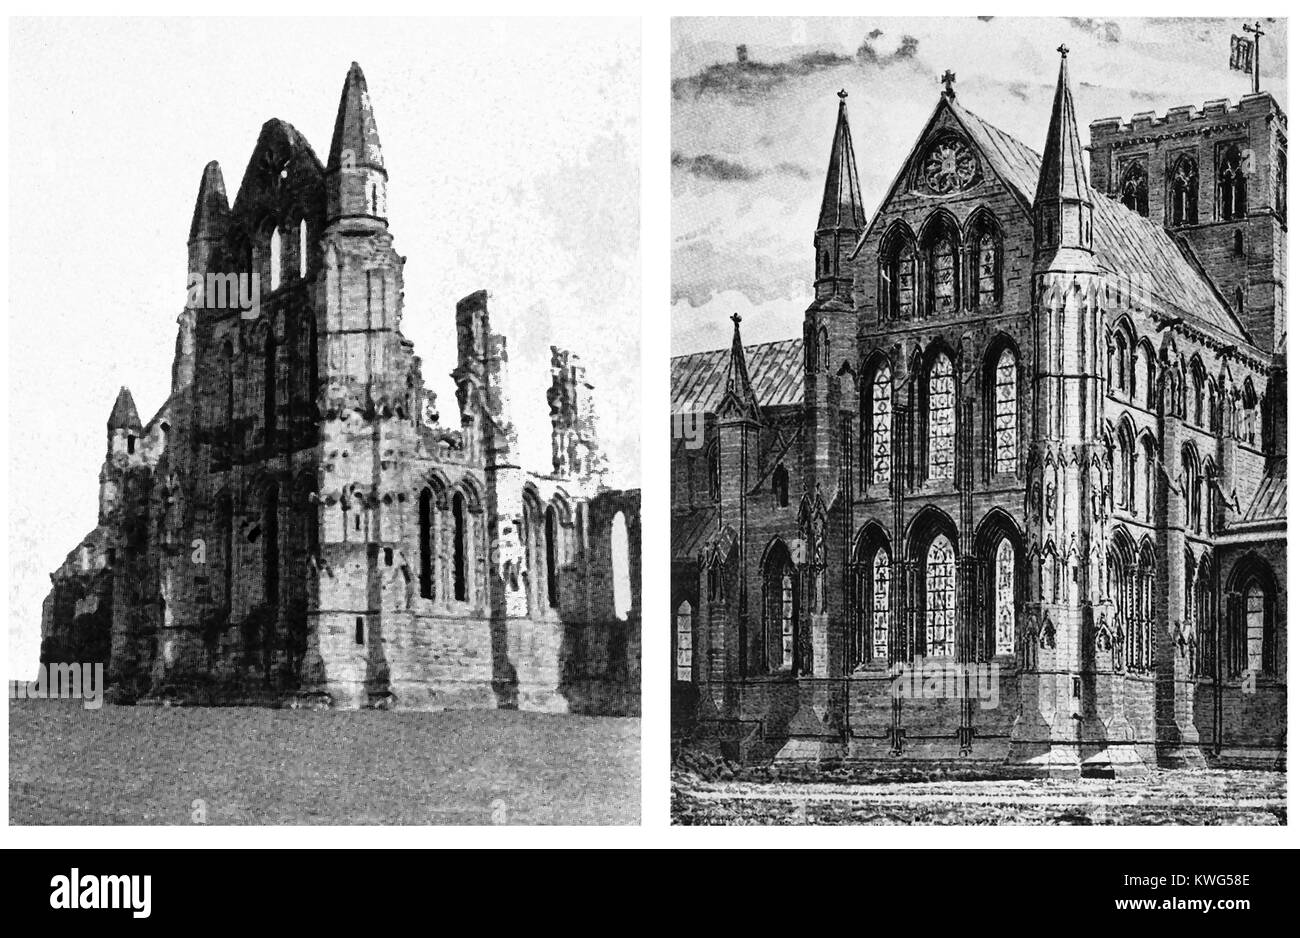 L'ABBAYE DE WHITBY restauré , Ile-de-France - le transept nord (extérieur)en ruines et une impression de sa forme originale (1938 illustrations) Banque D'Images